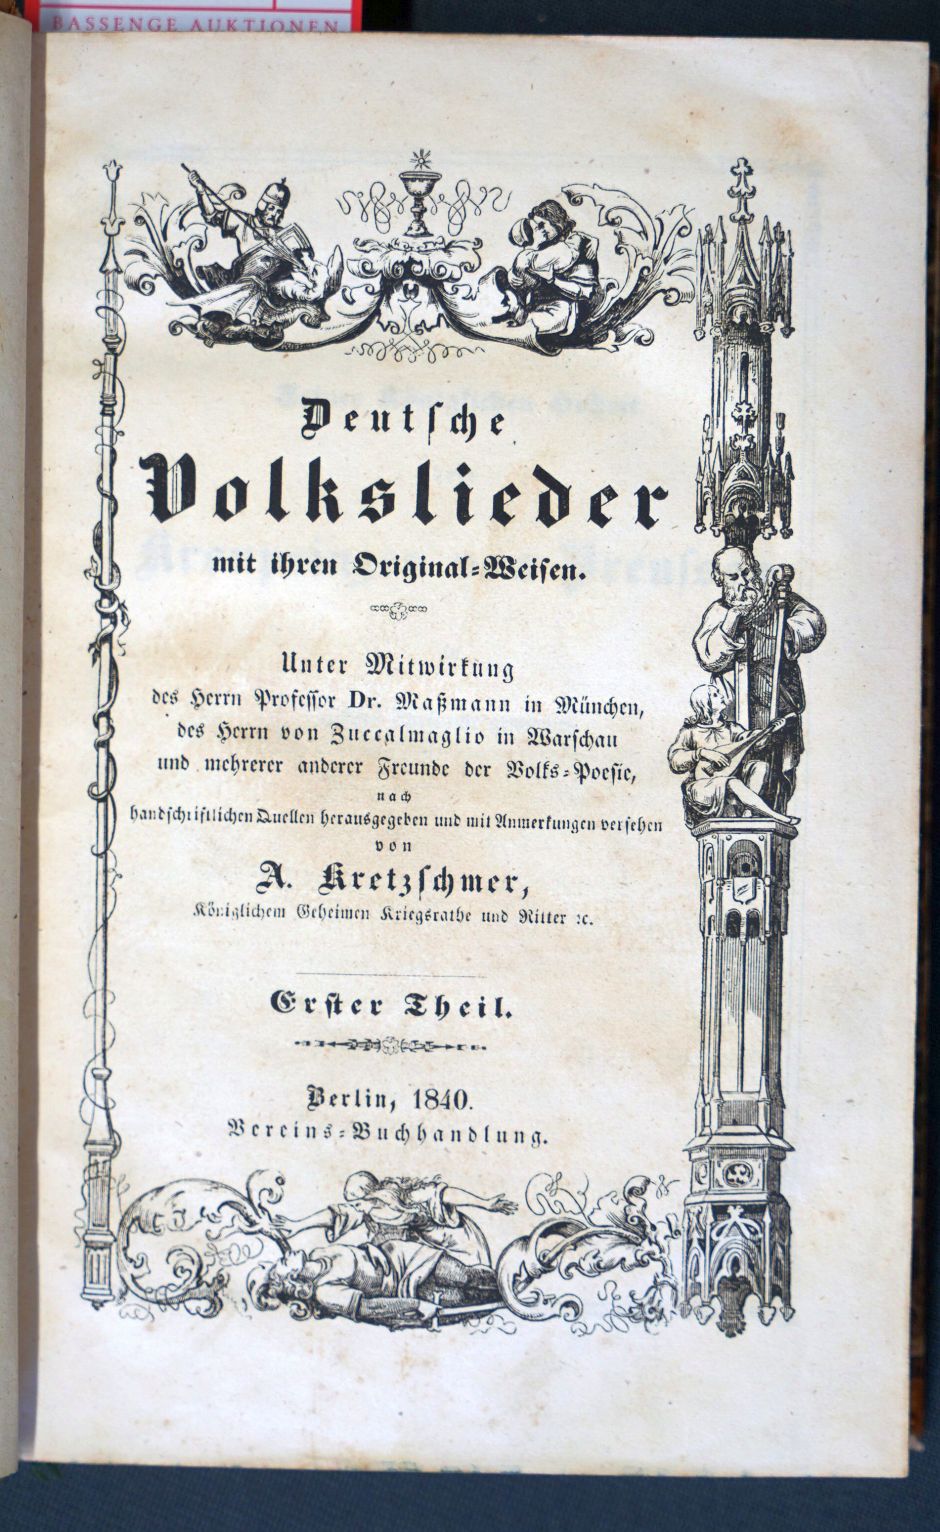 Lot 2105, Auction  115, Kretzschmer, Andreas, Deutsche Volkslieder mit ihren Original-Weisen